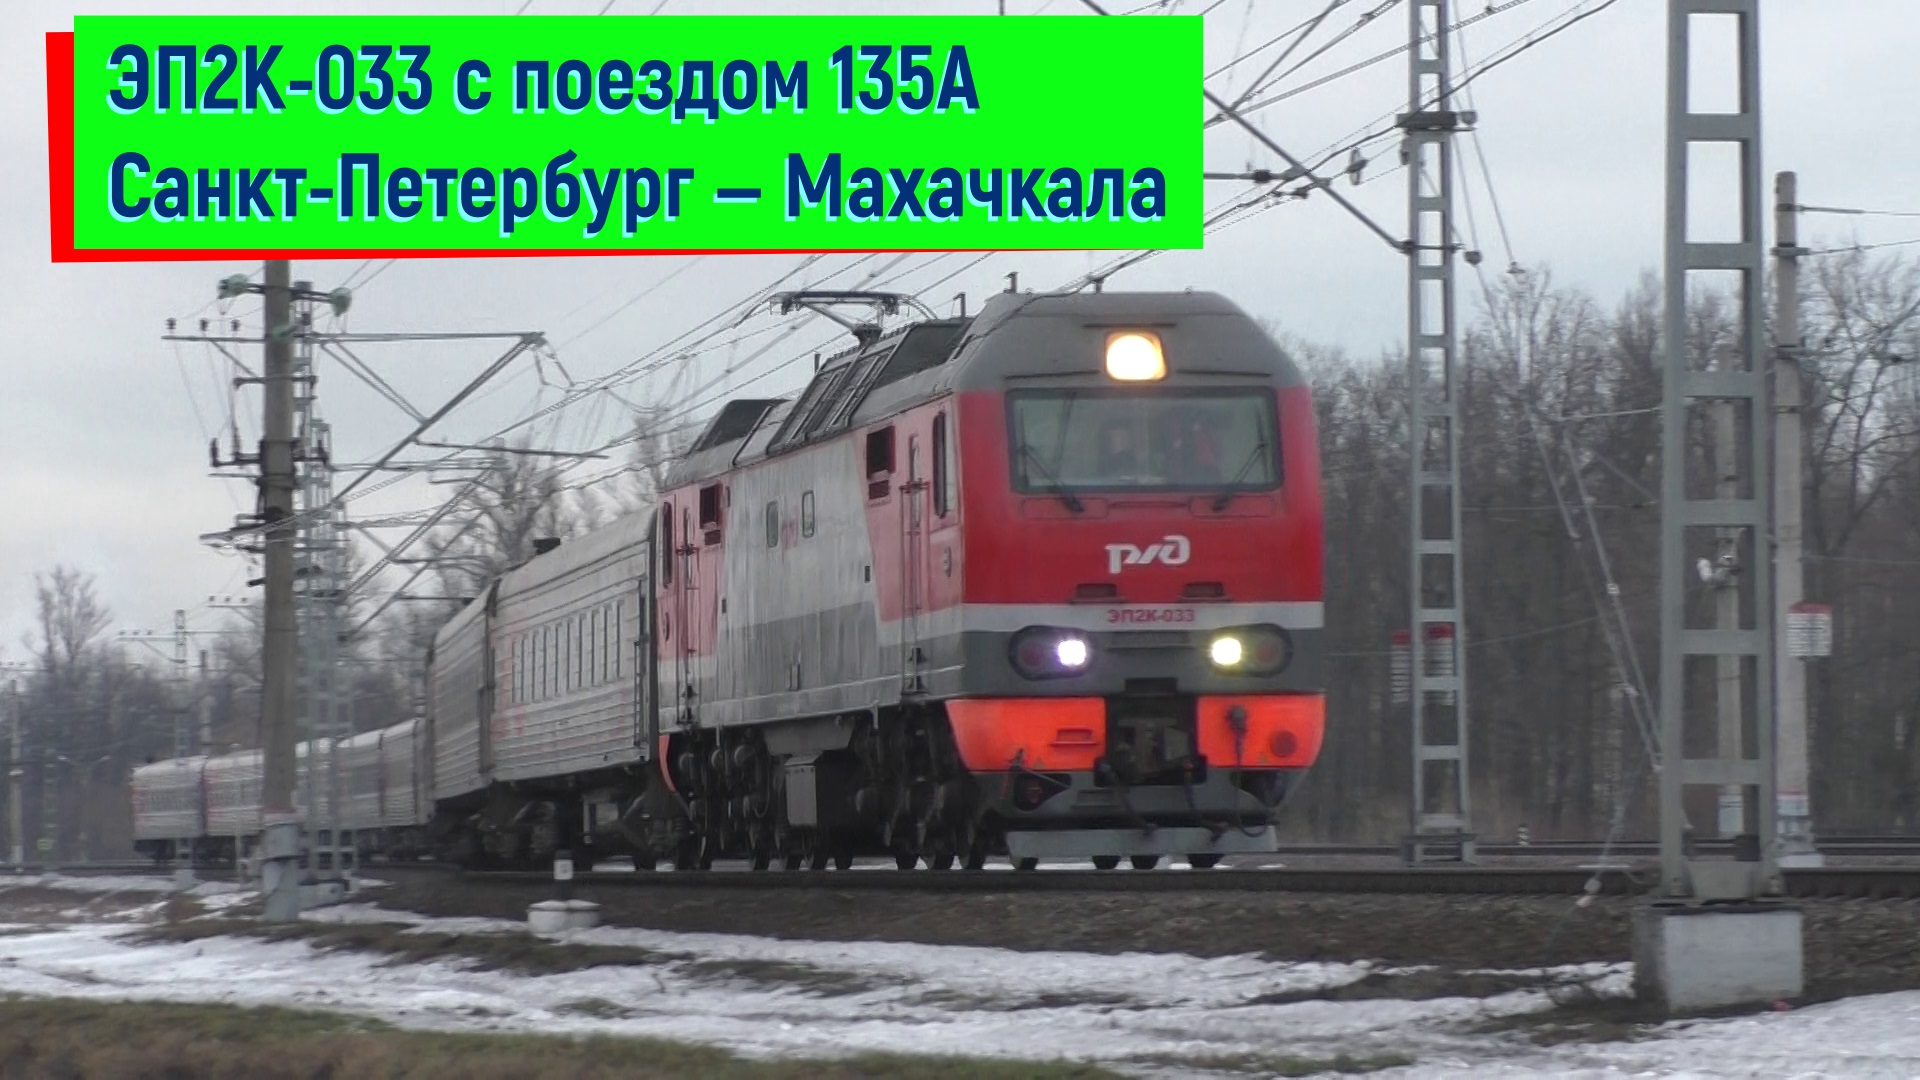 Электровоз ЭП2К-033 с поездом 135А Санкт-Петербург — Махачкала выходит со станции Колпино | EP2K-033